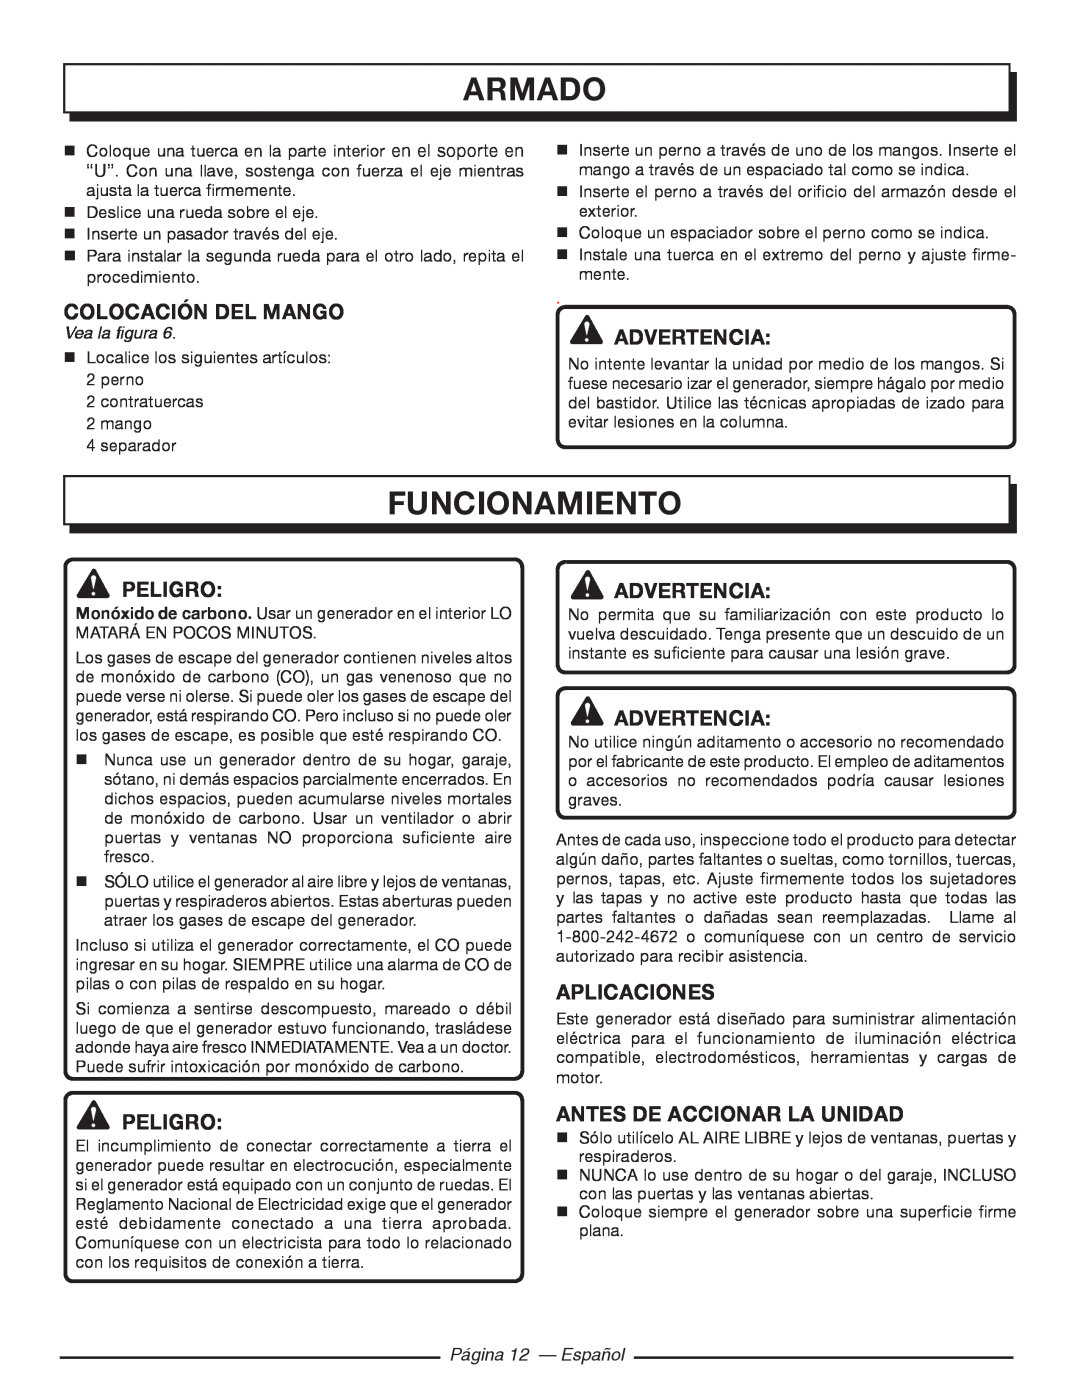 Homelite HGCA5000 Funcionamiento, Colocación Del Mango, Aplicaciones, Antes De Accionar La Unidad, Página 12 - Español 